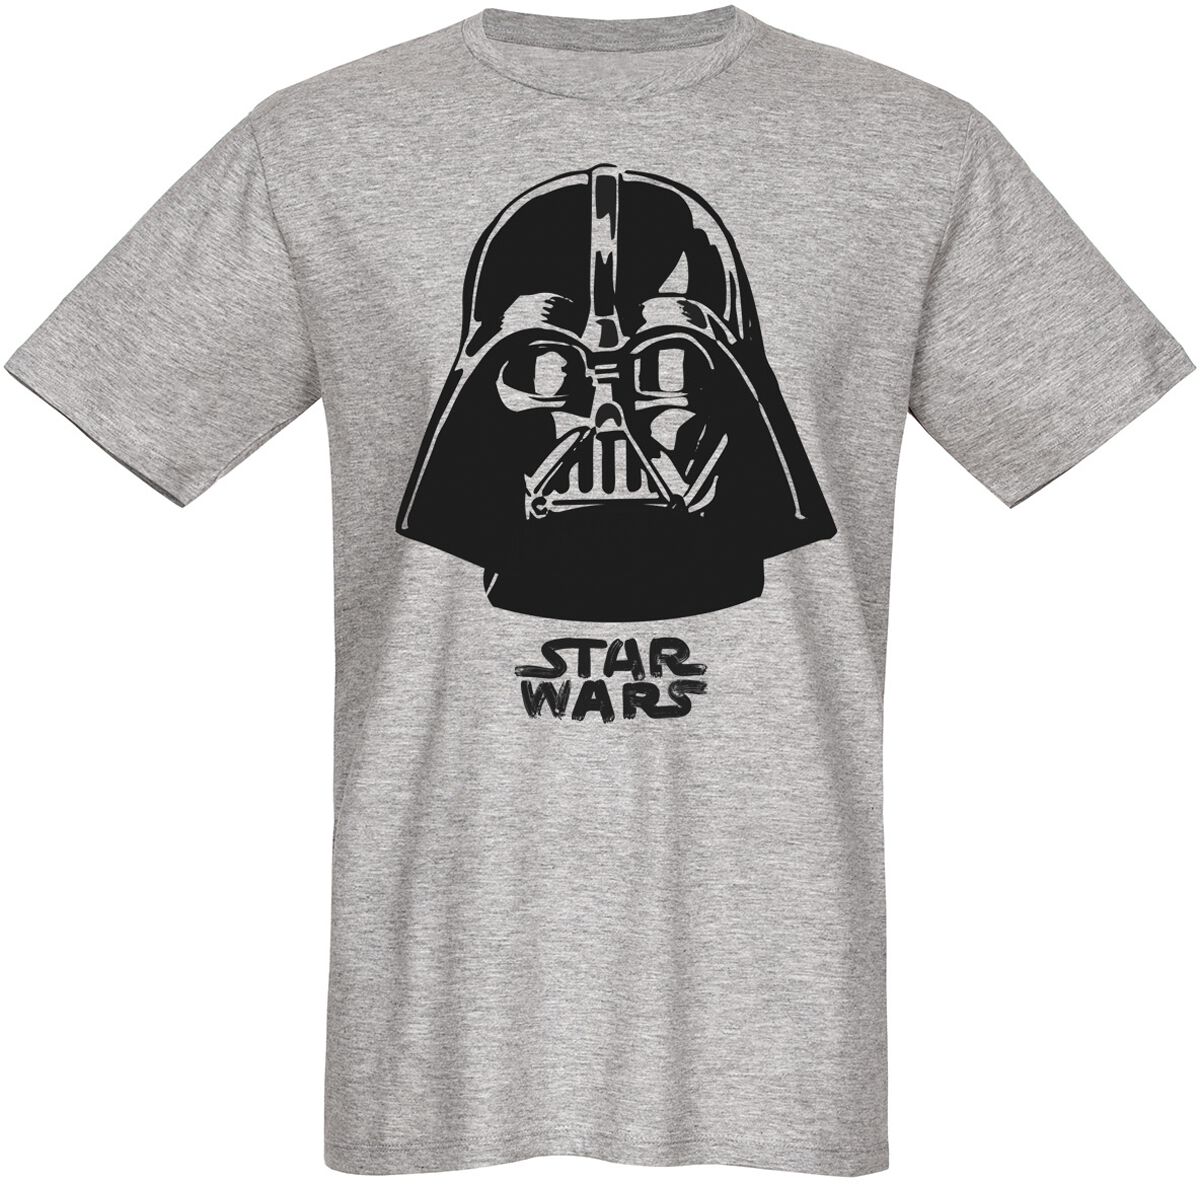 Star Wars Darth Vader - The Boss T-Shirt grau in L